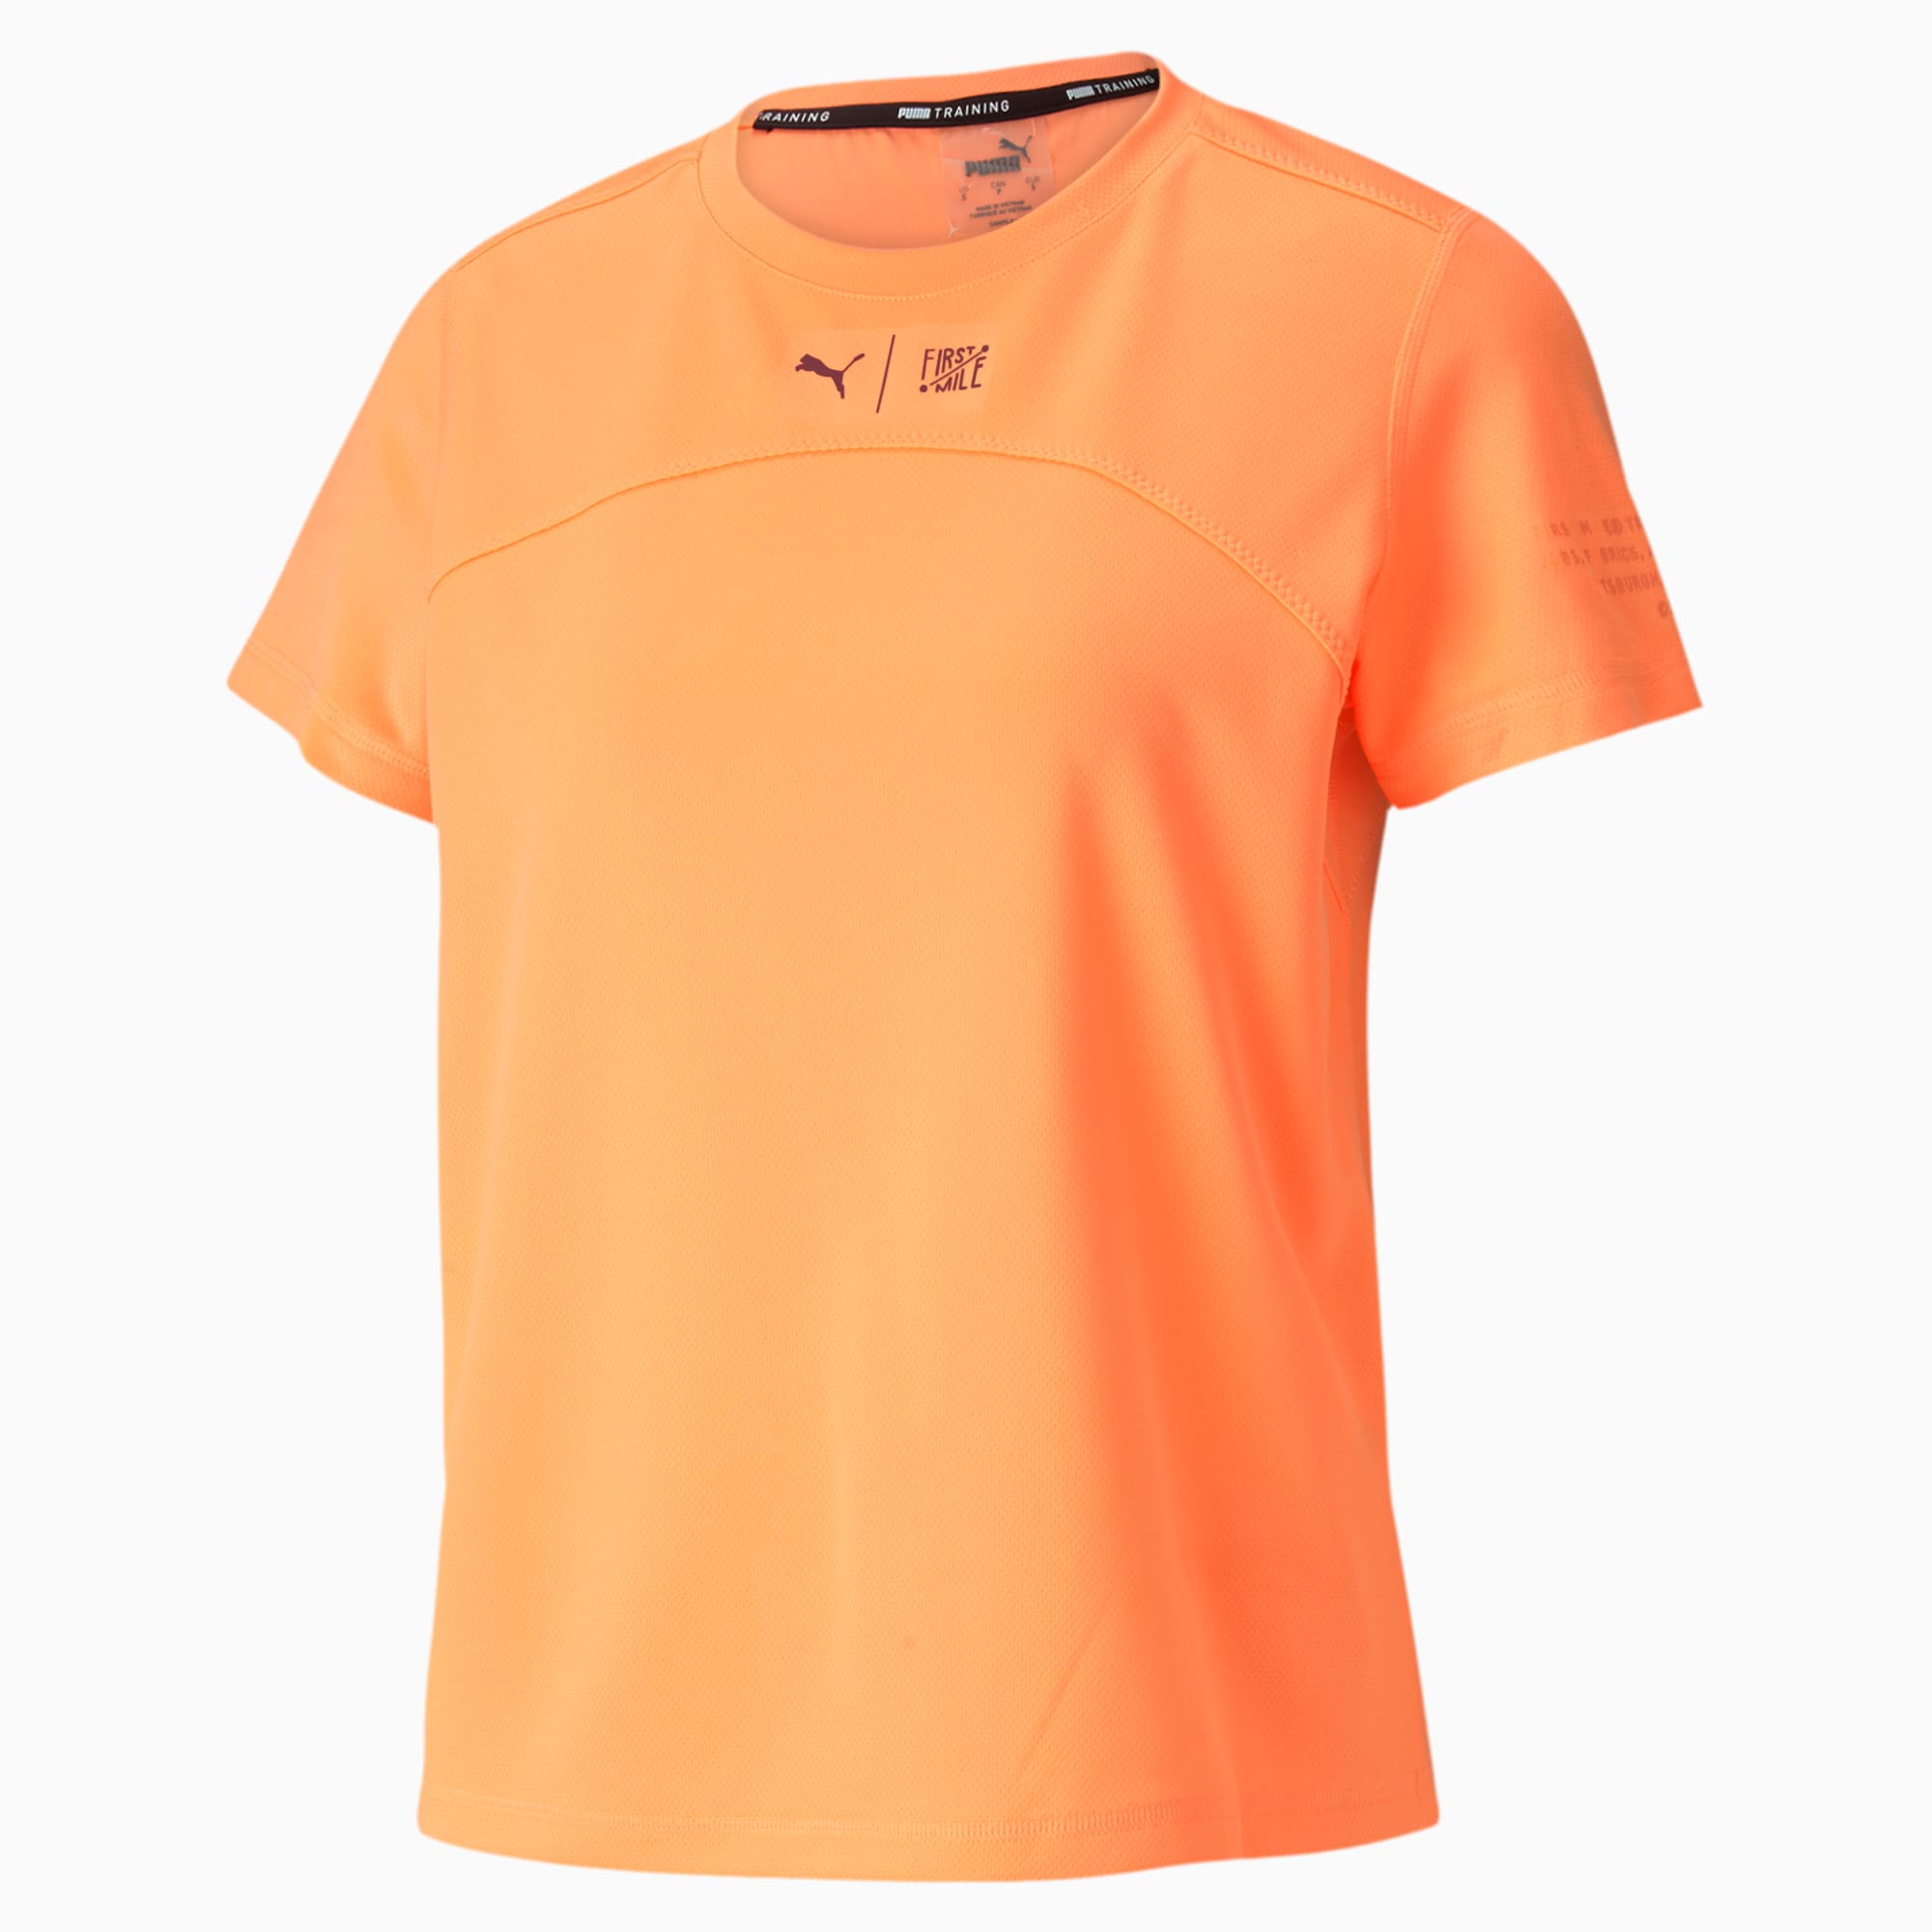 puma orange shirt